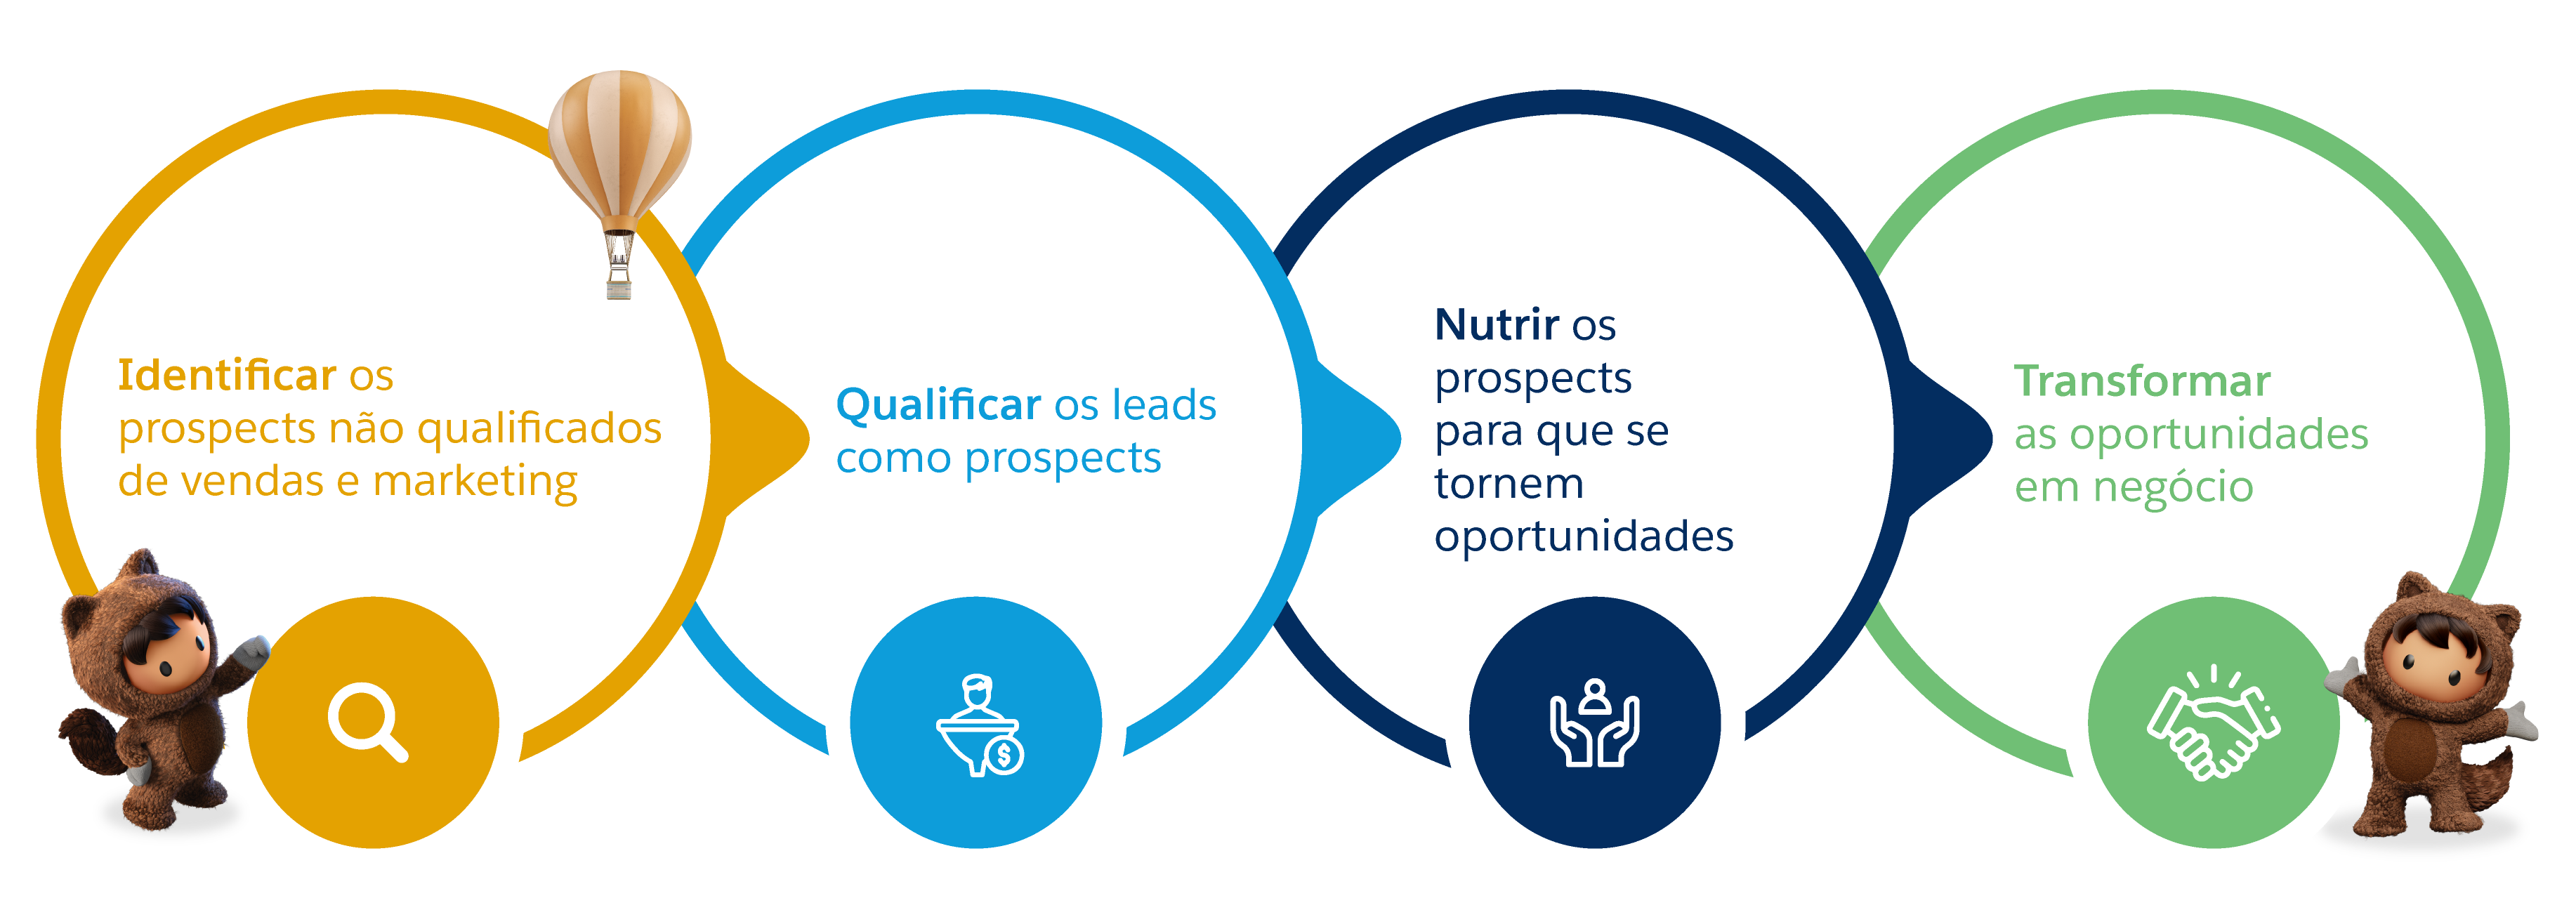 Captação De Clientes O Que é E Como Fazer Salesforce Brasil Blog Da Salesforce 6923